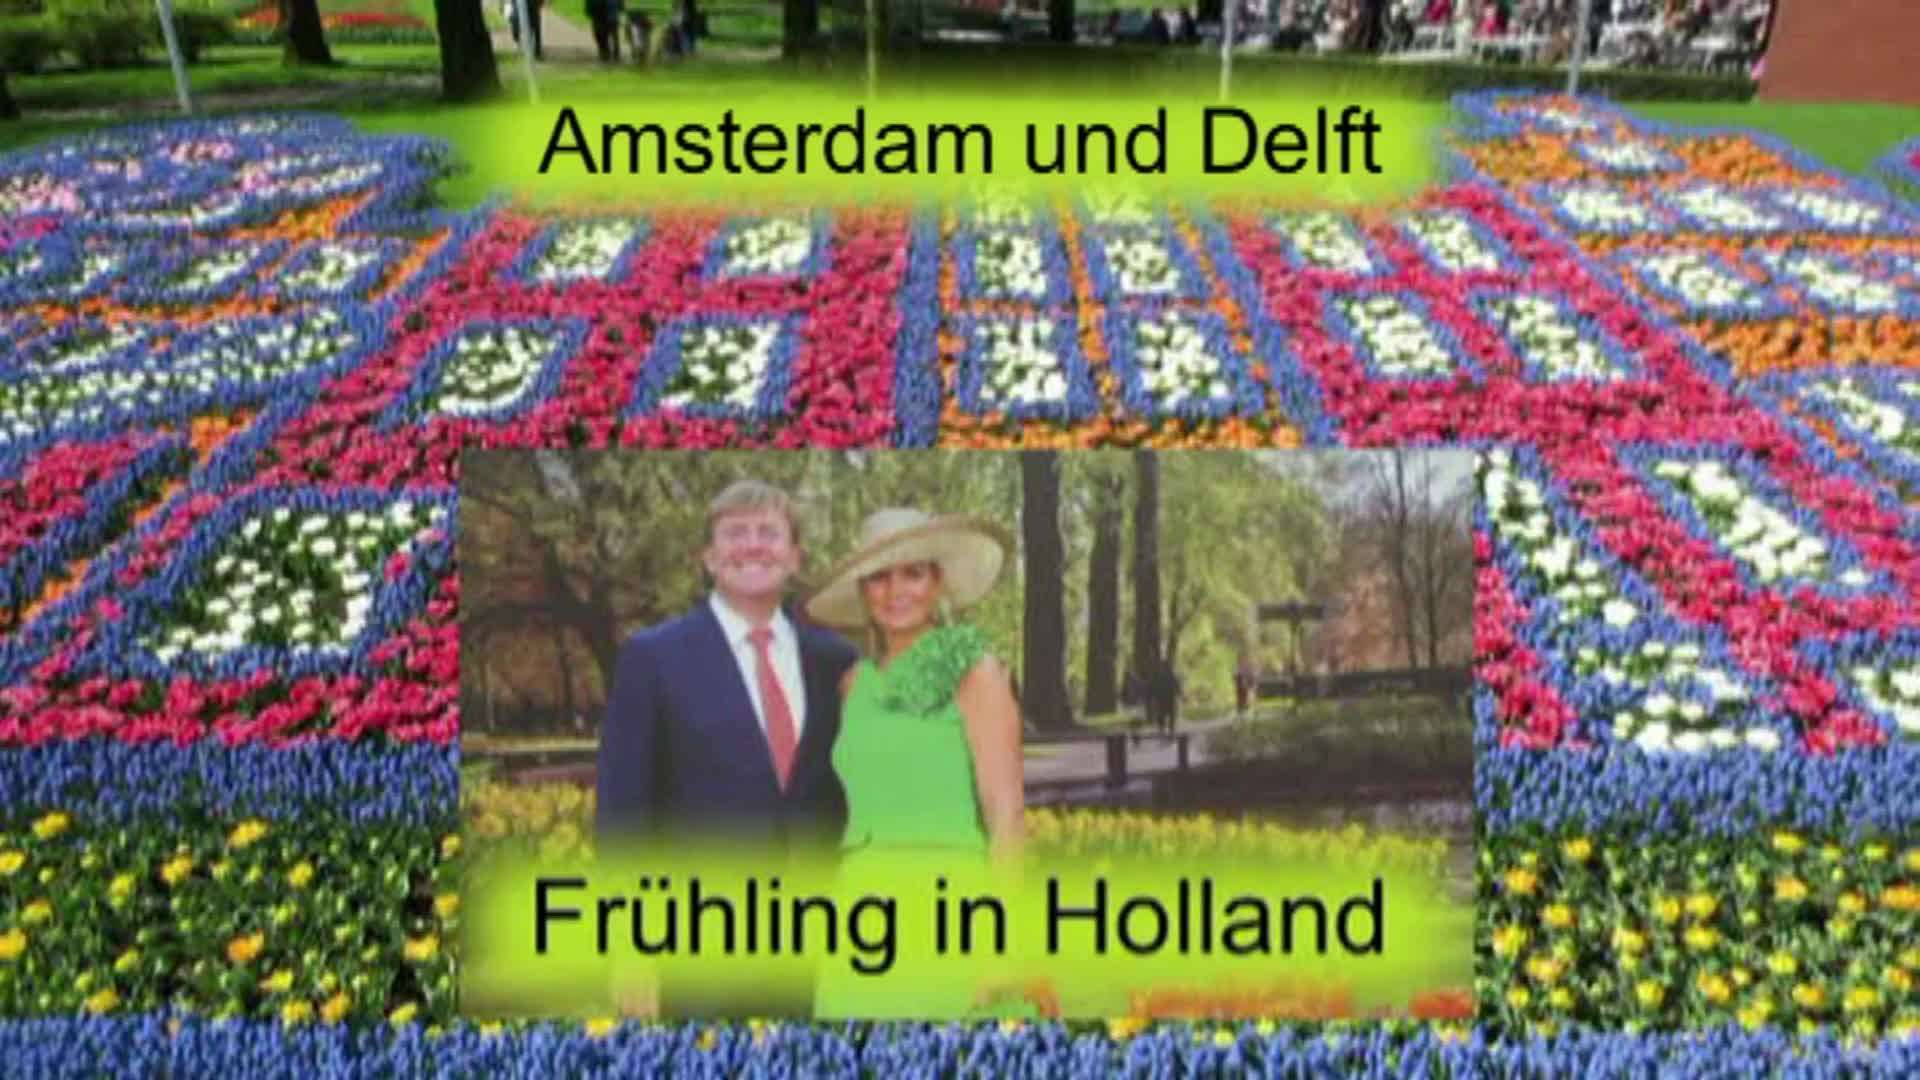 Frühling in Holland (1) Amsterdam und Delft